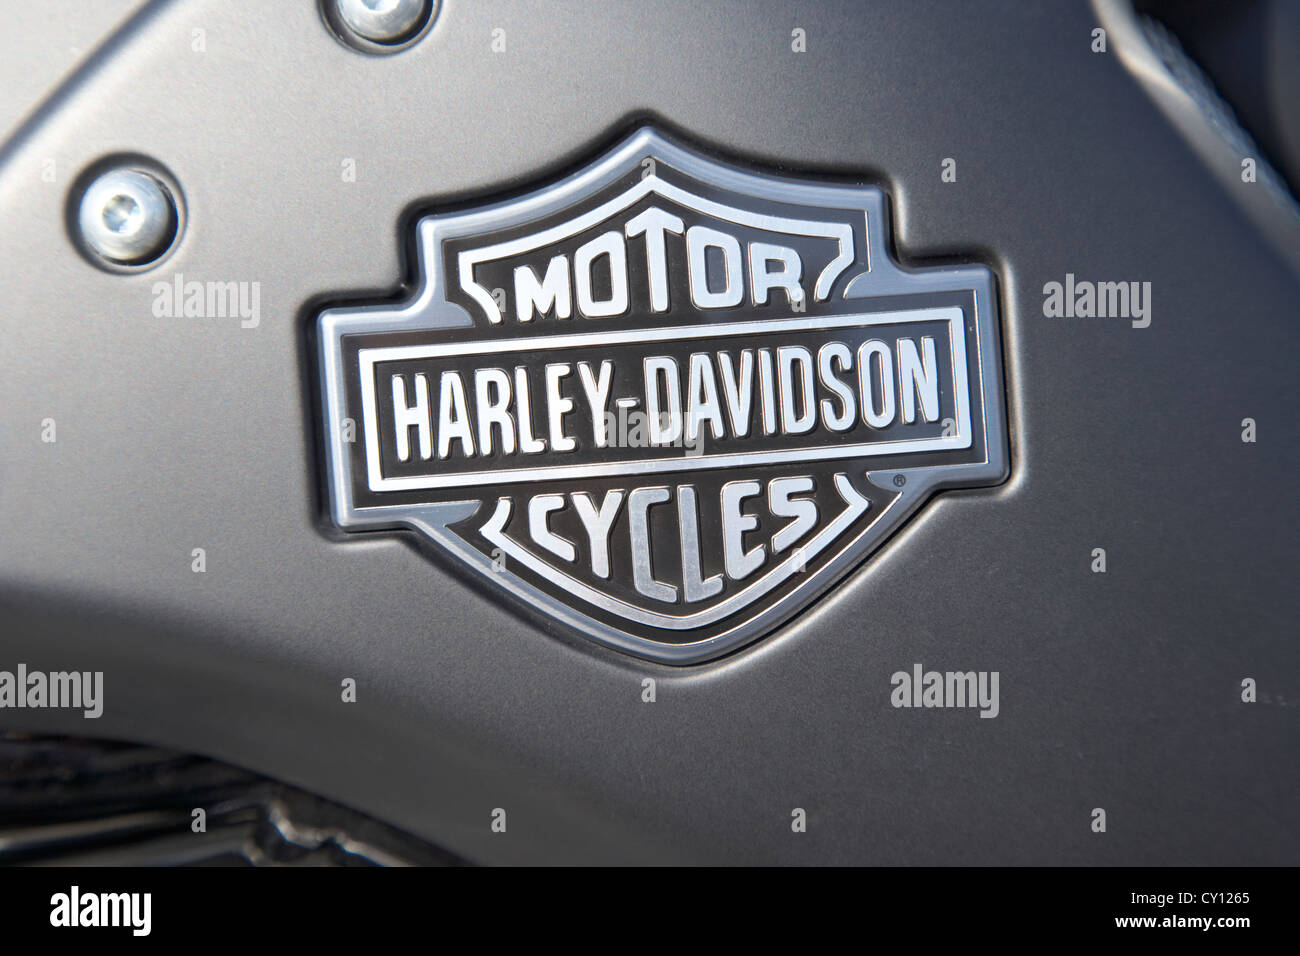 Bouclier et Harley Davidson bar logo sur un v-rod bike à Orlando la Floride Etats-Unis Banque D'Images